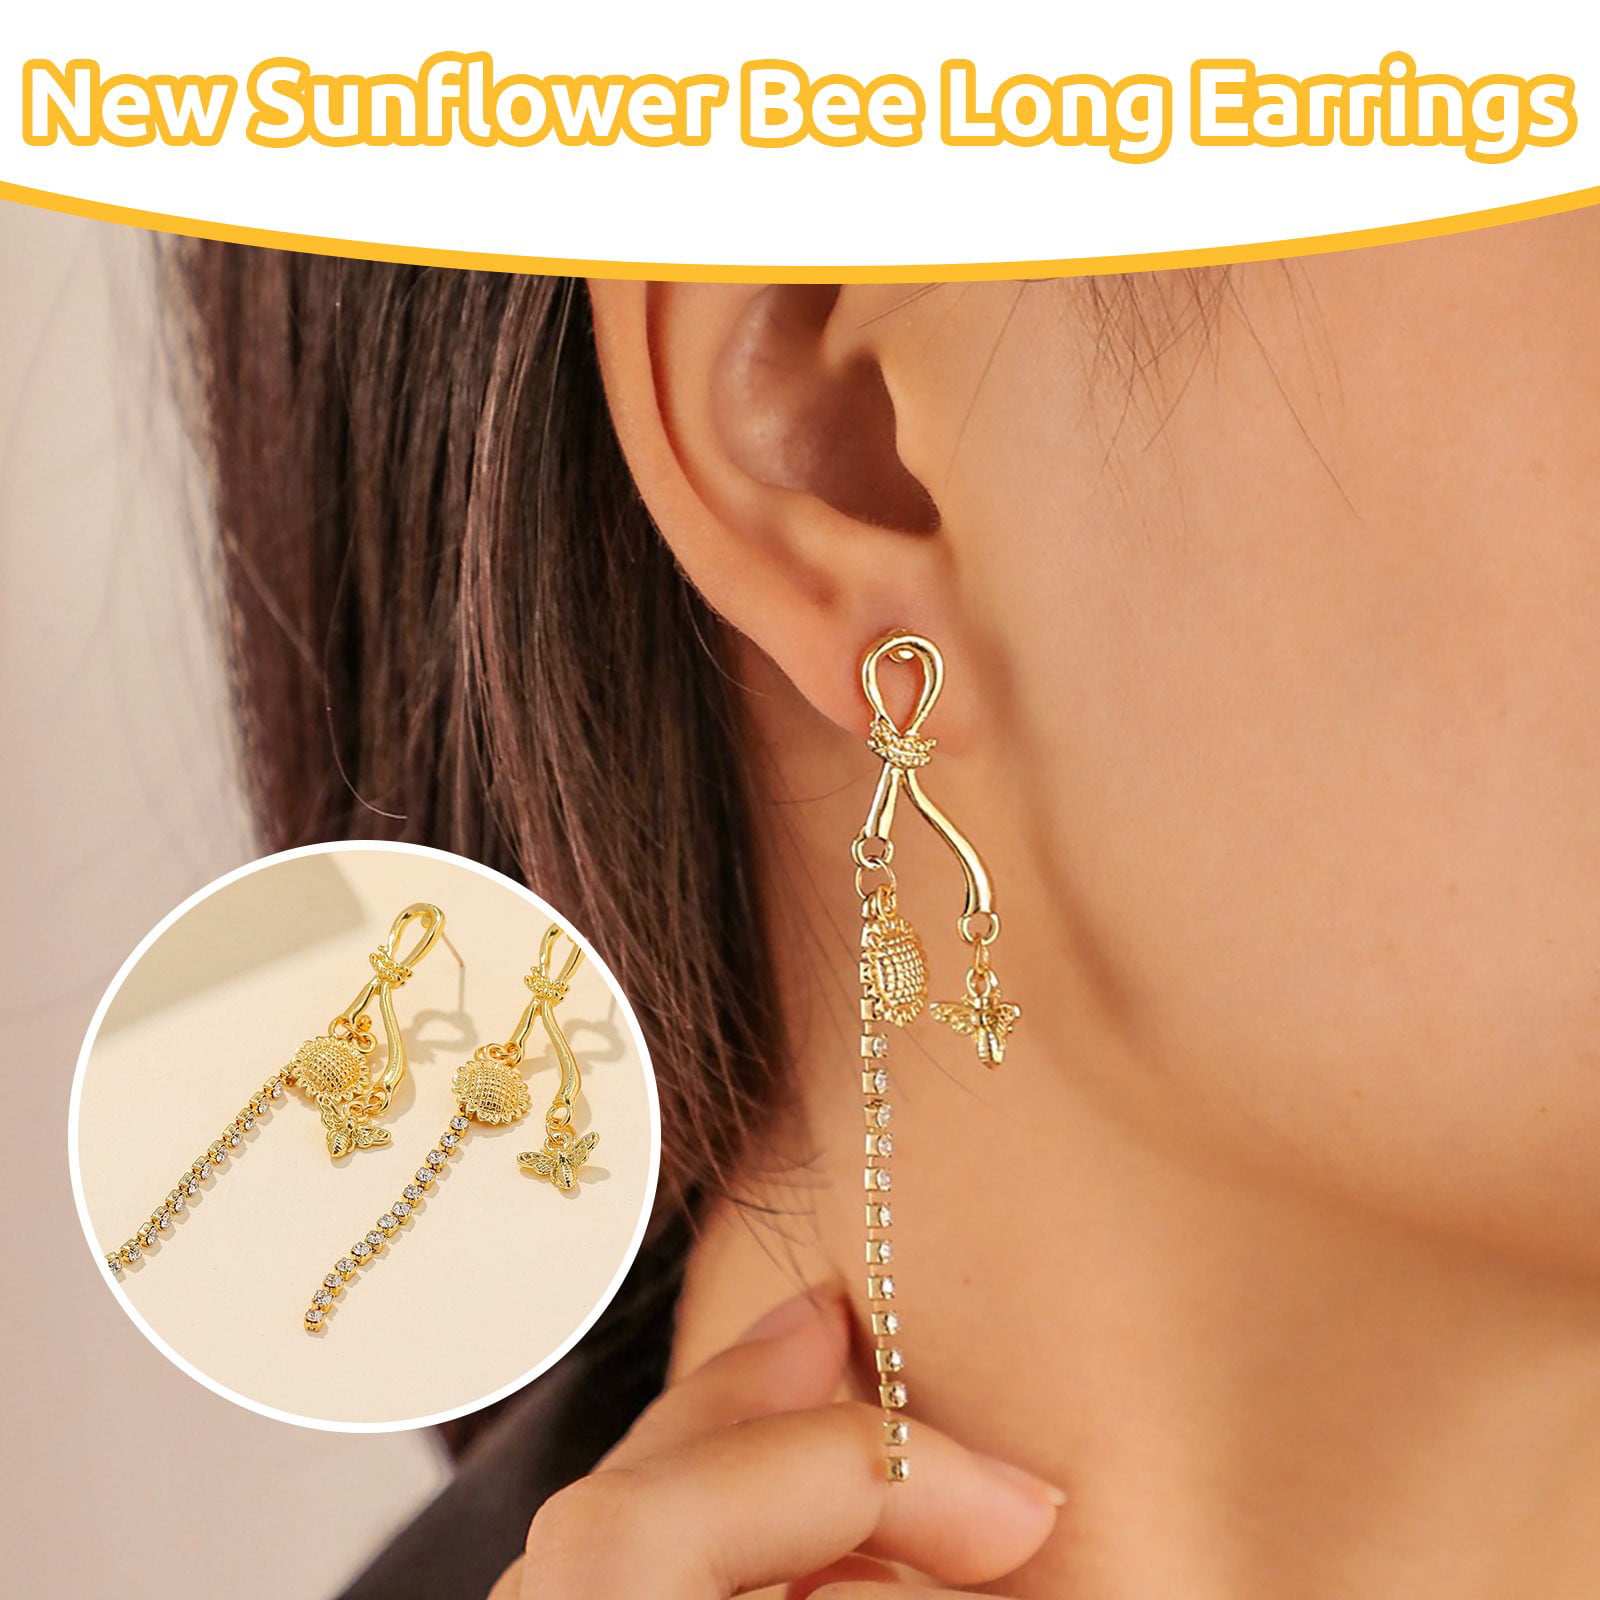 Adult Earring Flower and Garden Earrings Back to School Easter Earring Dangle Earring Spring Earring Bumble Bee Drop Earrings